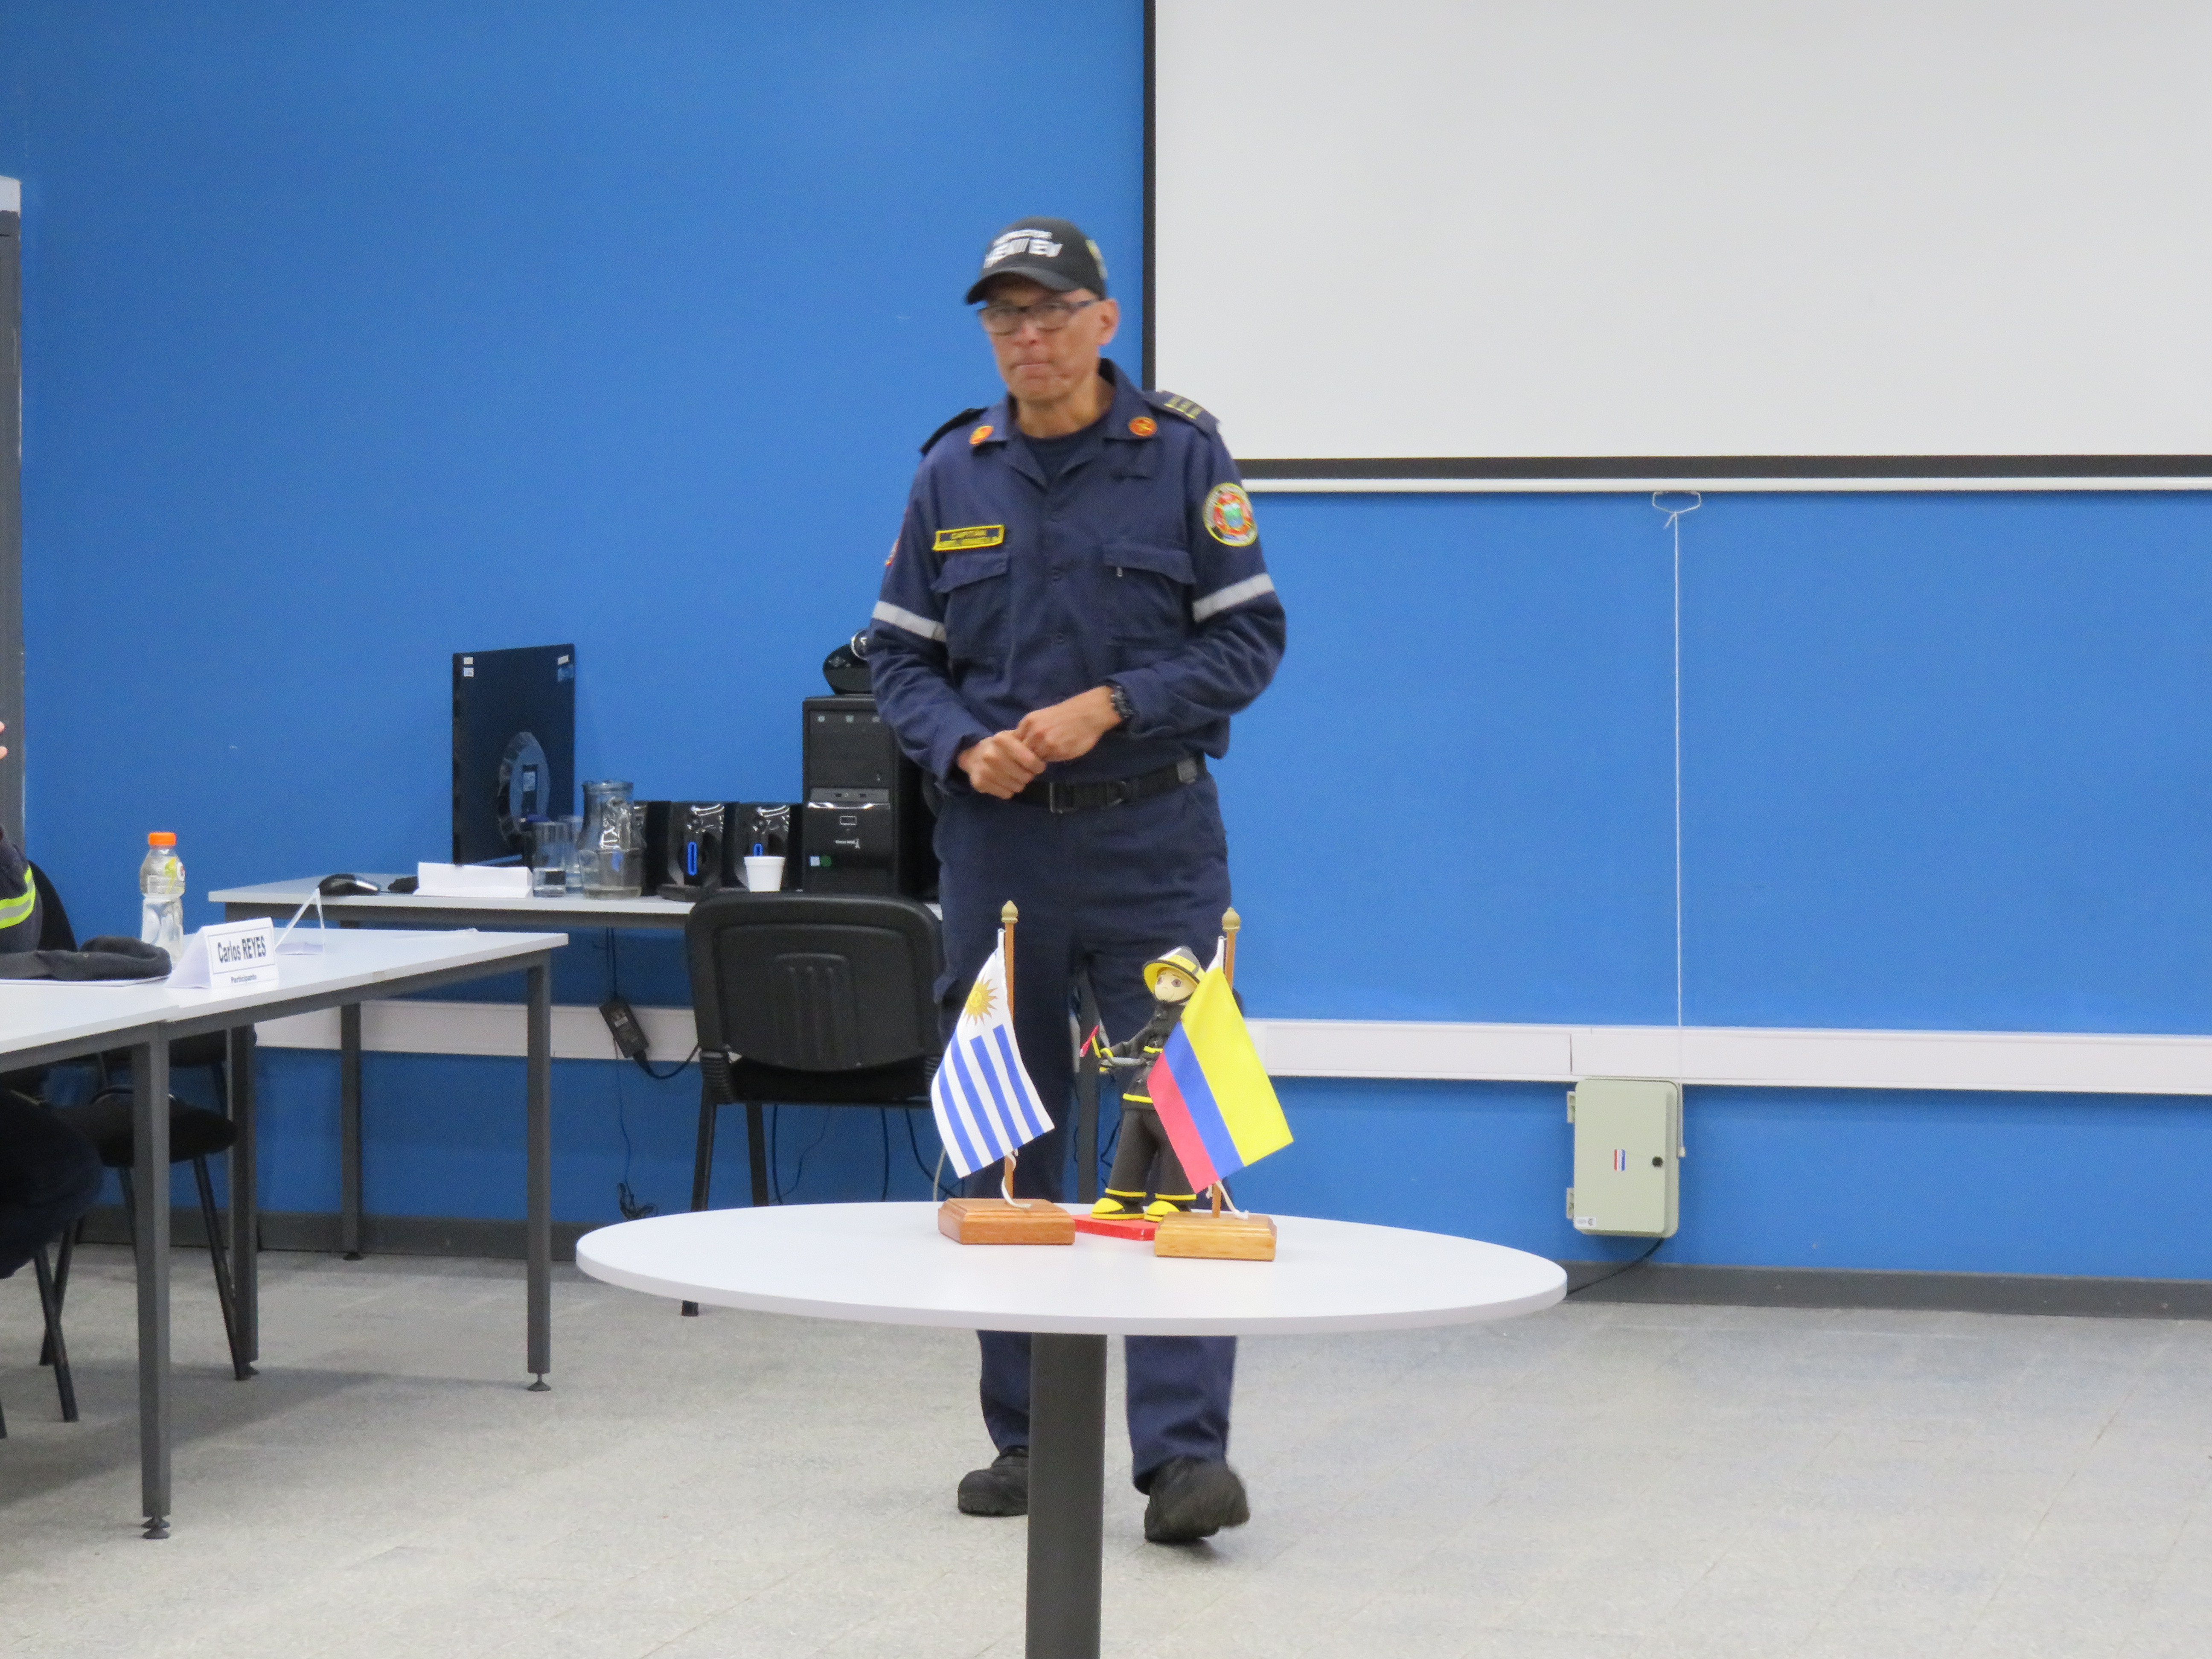 IMG_20230511_3769-F7Wrkni5.jpg - El pasado jueves 11 de mayo culminó la &#034;Capacitación para bomberos sobre manejo de incidentes relacionados con la movilidad eléctrica&#034; en donde se capacitaron a 25 bomberos en la Base Aérea de Santa Bernardina del departamento de Durazno. Esta capacitación es la continuación del primer curso regional que organizó la plataforma MOVE del Programa de la Naciones Unidas para el Medio Ambiente a finales de 2022 en Paraguay, donde participaron y se formaron dos bomberos instructores de Uruguay.